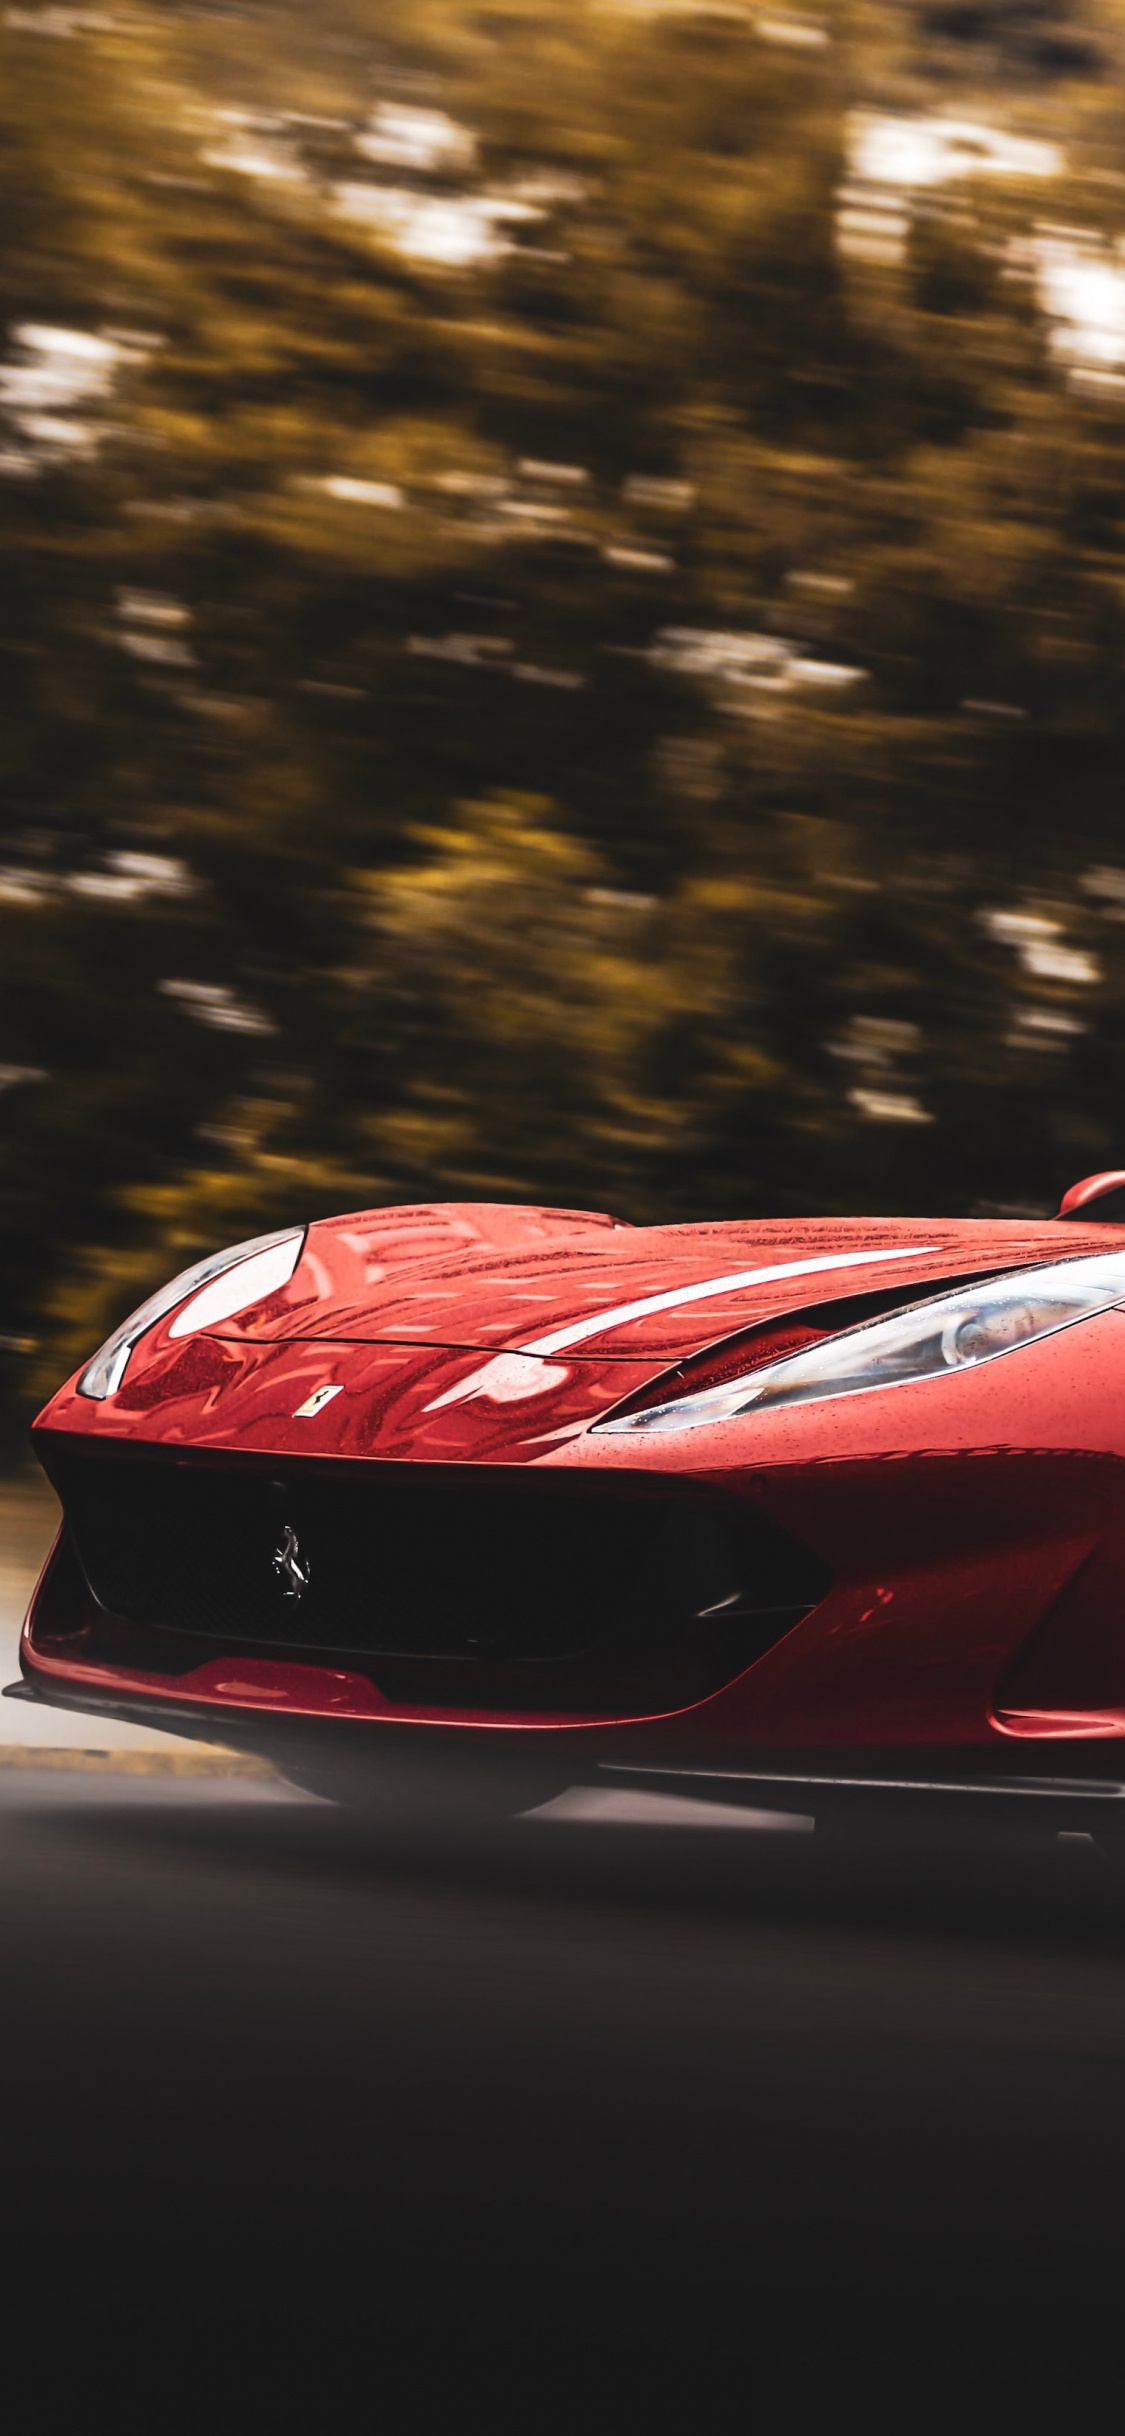 Ferrari 458 Italia Rojo en la Carretera Durante el Día. Wallpaper in 1125x2436 Resolution